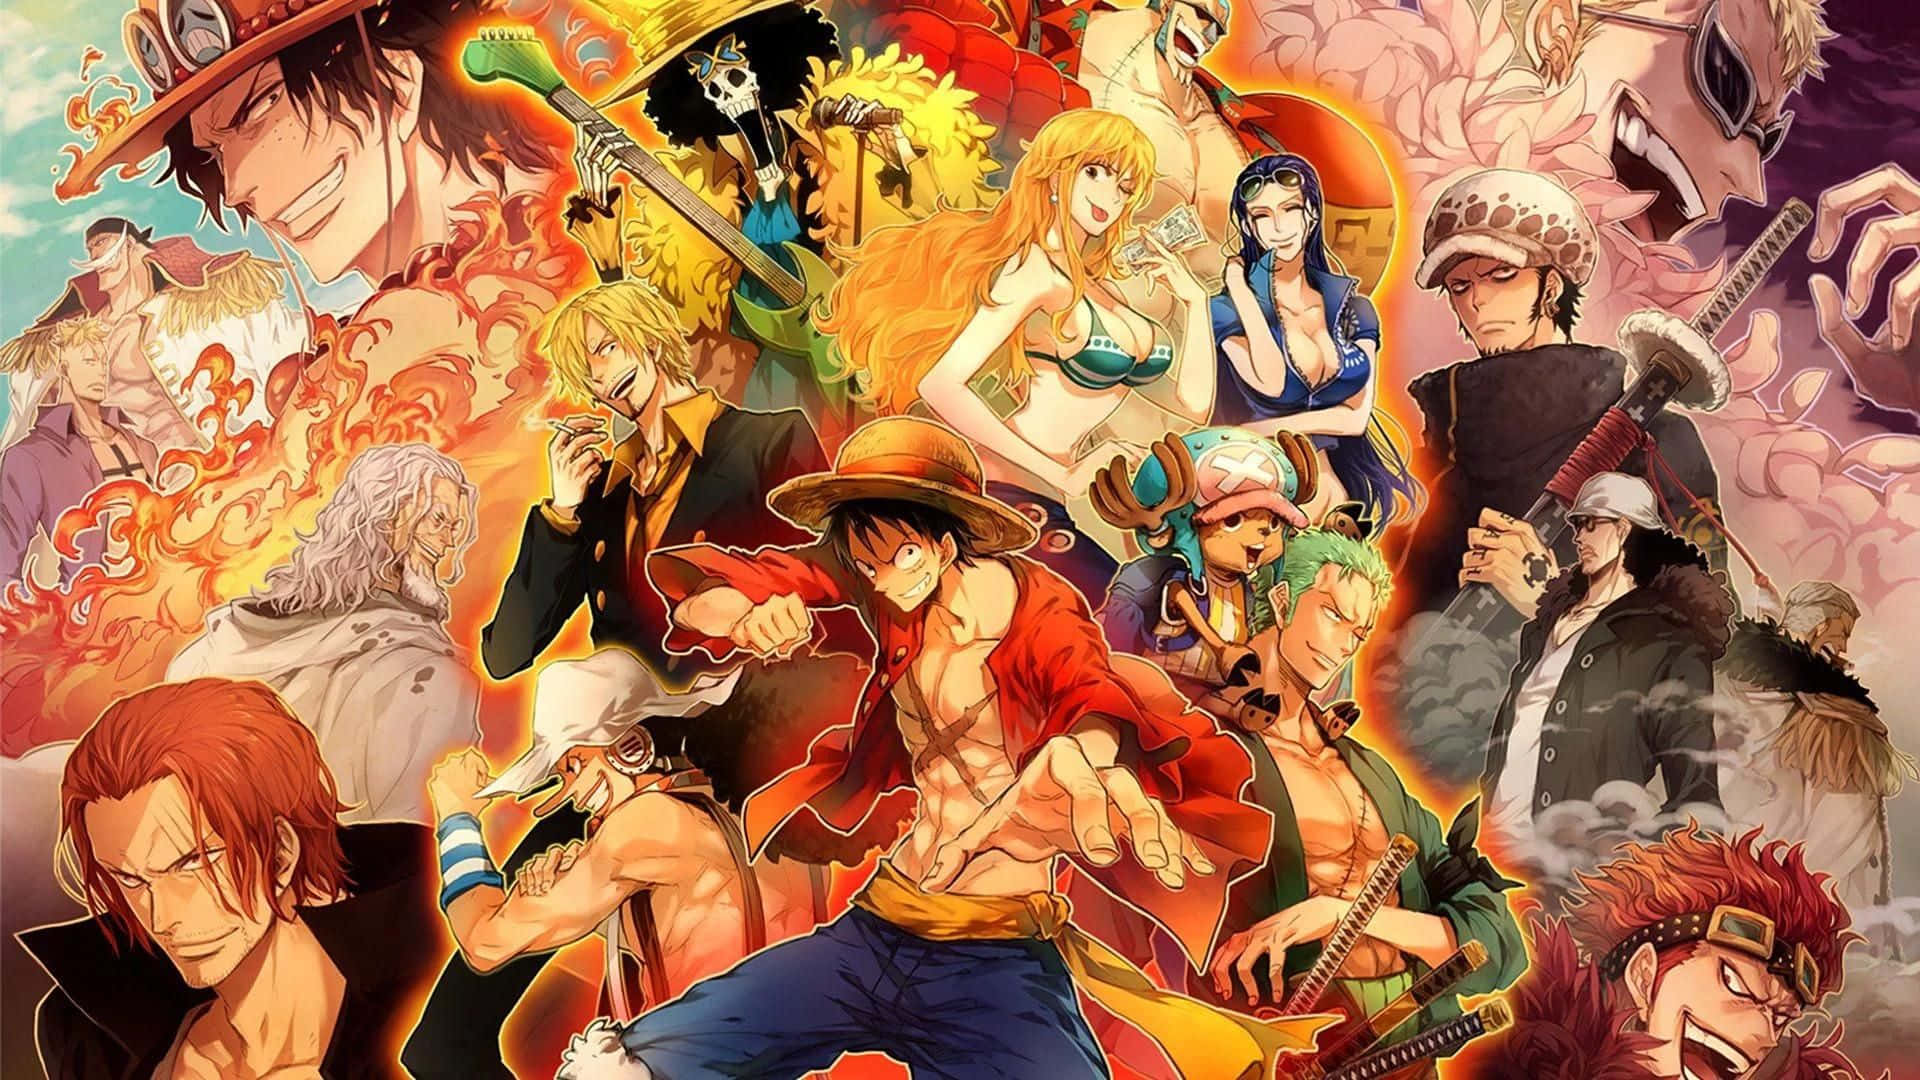 Bạn muốn tìm kiếm những hình nền mang phong cách riêng, đặc biệt là với chủ đề One Piece? Xem ngay các hình ảnh One Piece/Background liên quan để sở hữu những tác phẩm nghệ thuật độc đáo, từ tường hình đến hình nền điện thoại.